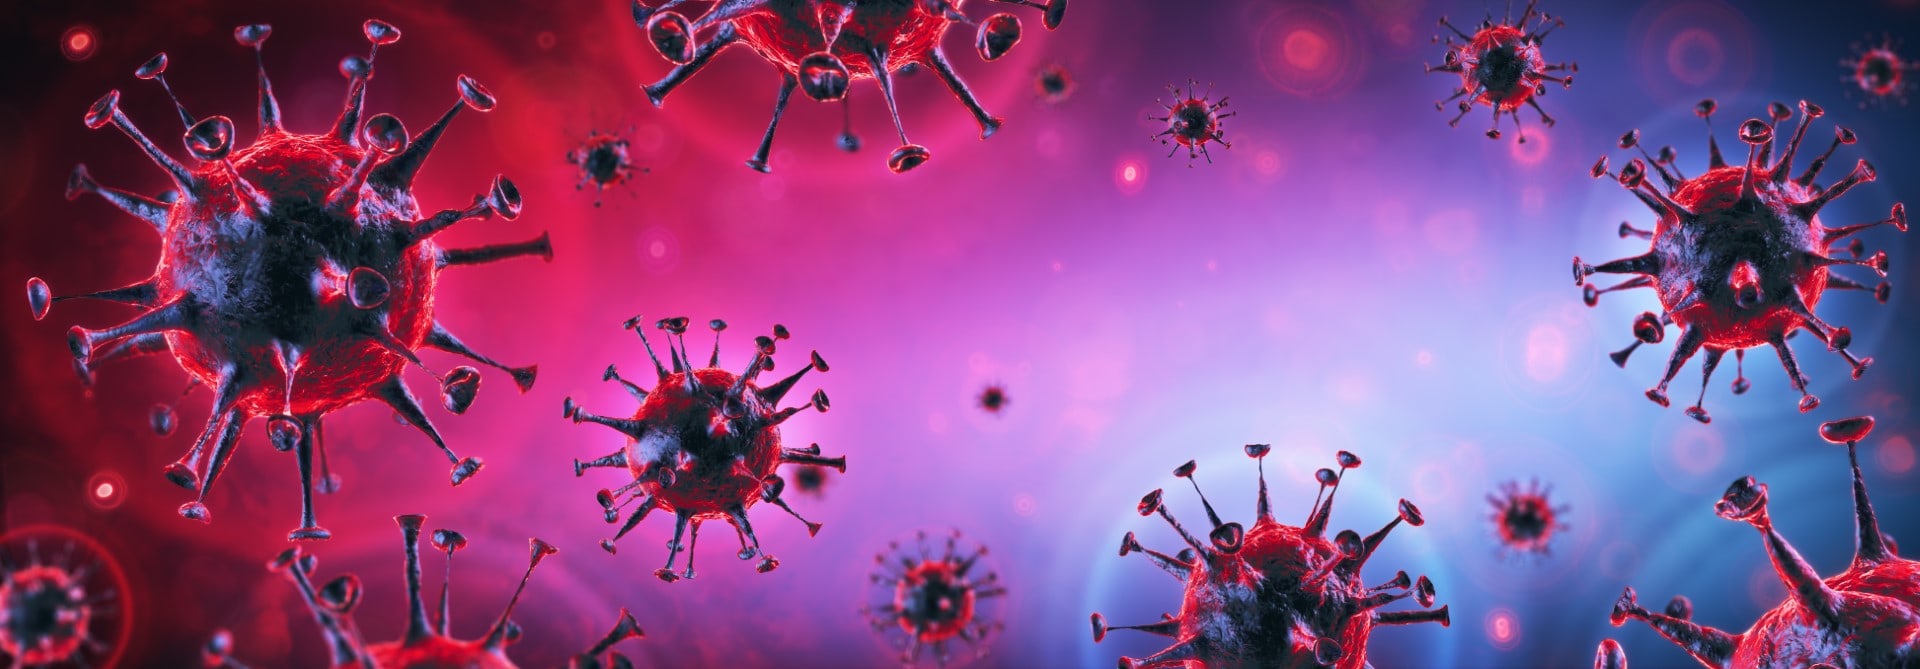 Covid-19 - Coronavirus In Danger Background - Virology Concept - 3d Rendering